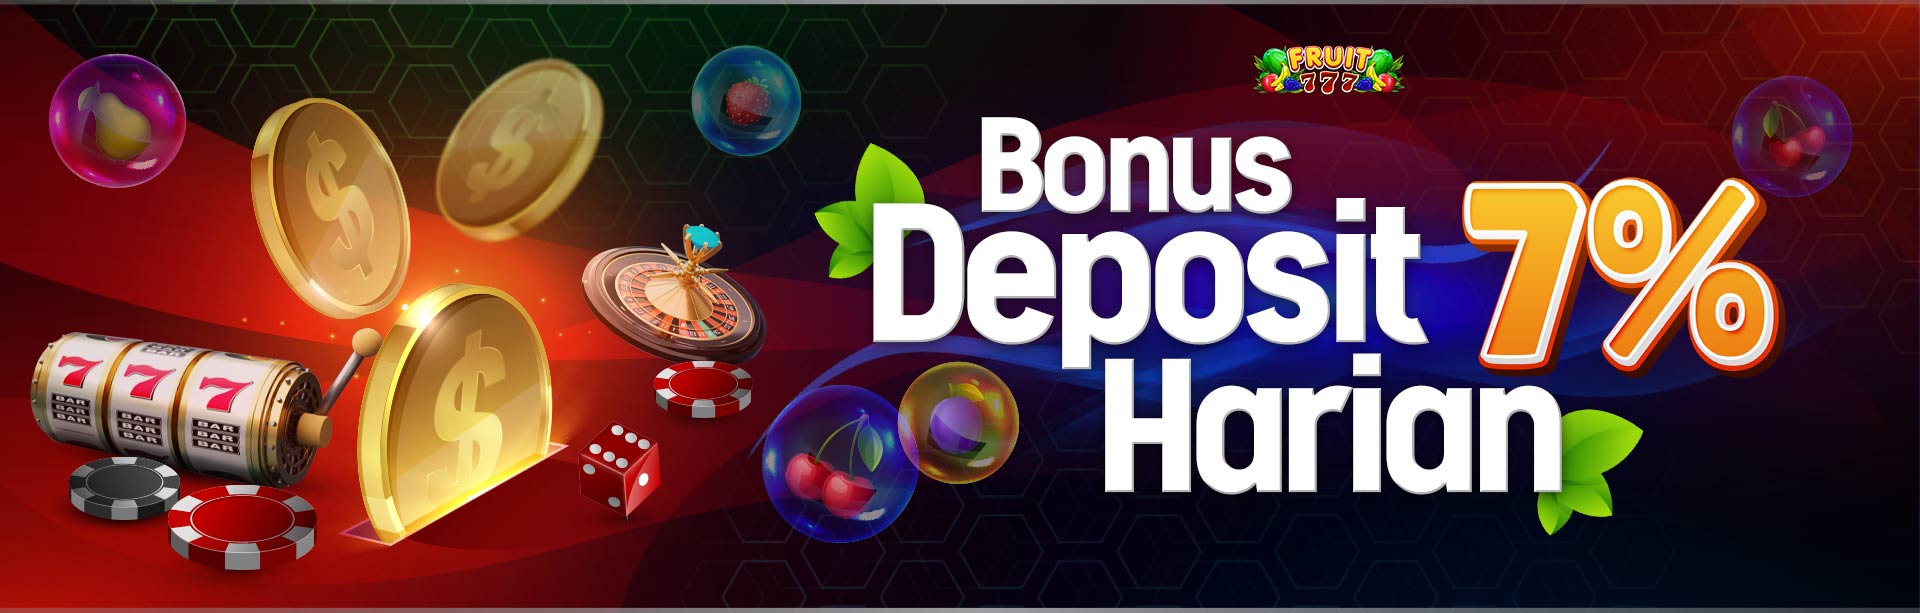 Bonus Deposit Harian 7% Slot